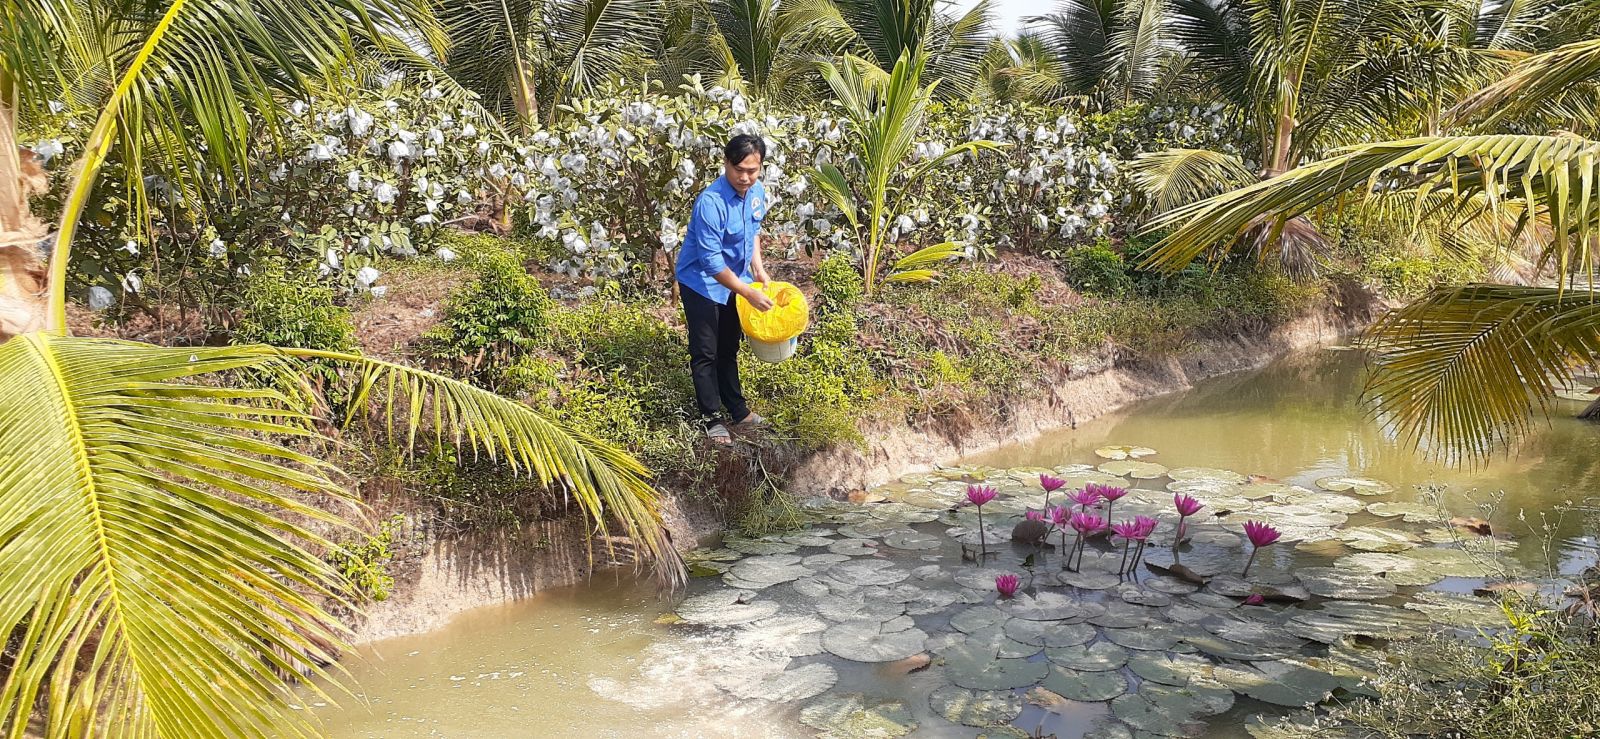 Tận dụng mặt nước giữa các liếp dừa, anh Vũ nuôi cá sặt bổi để tăng thu nhập